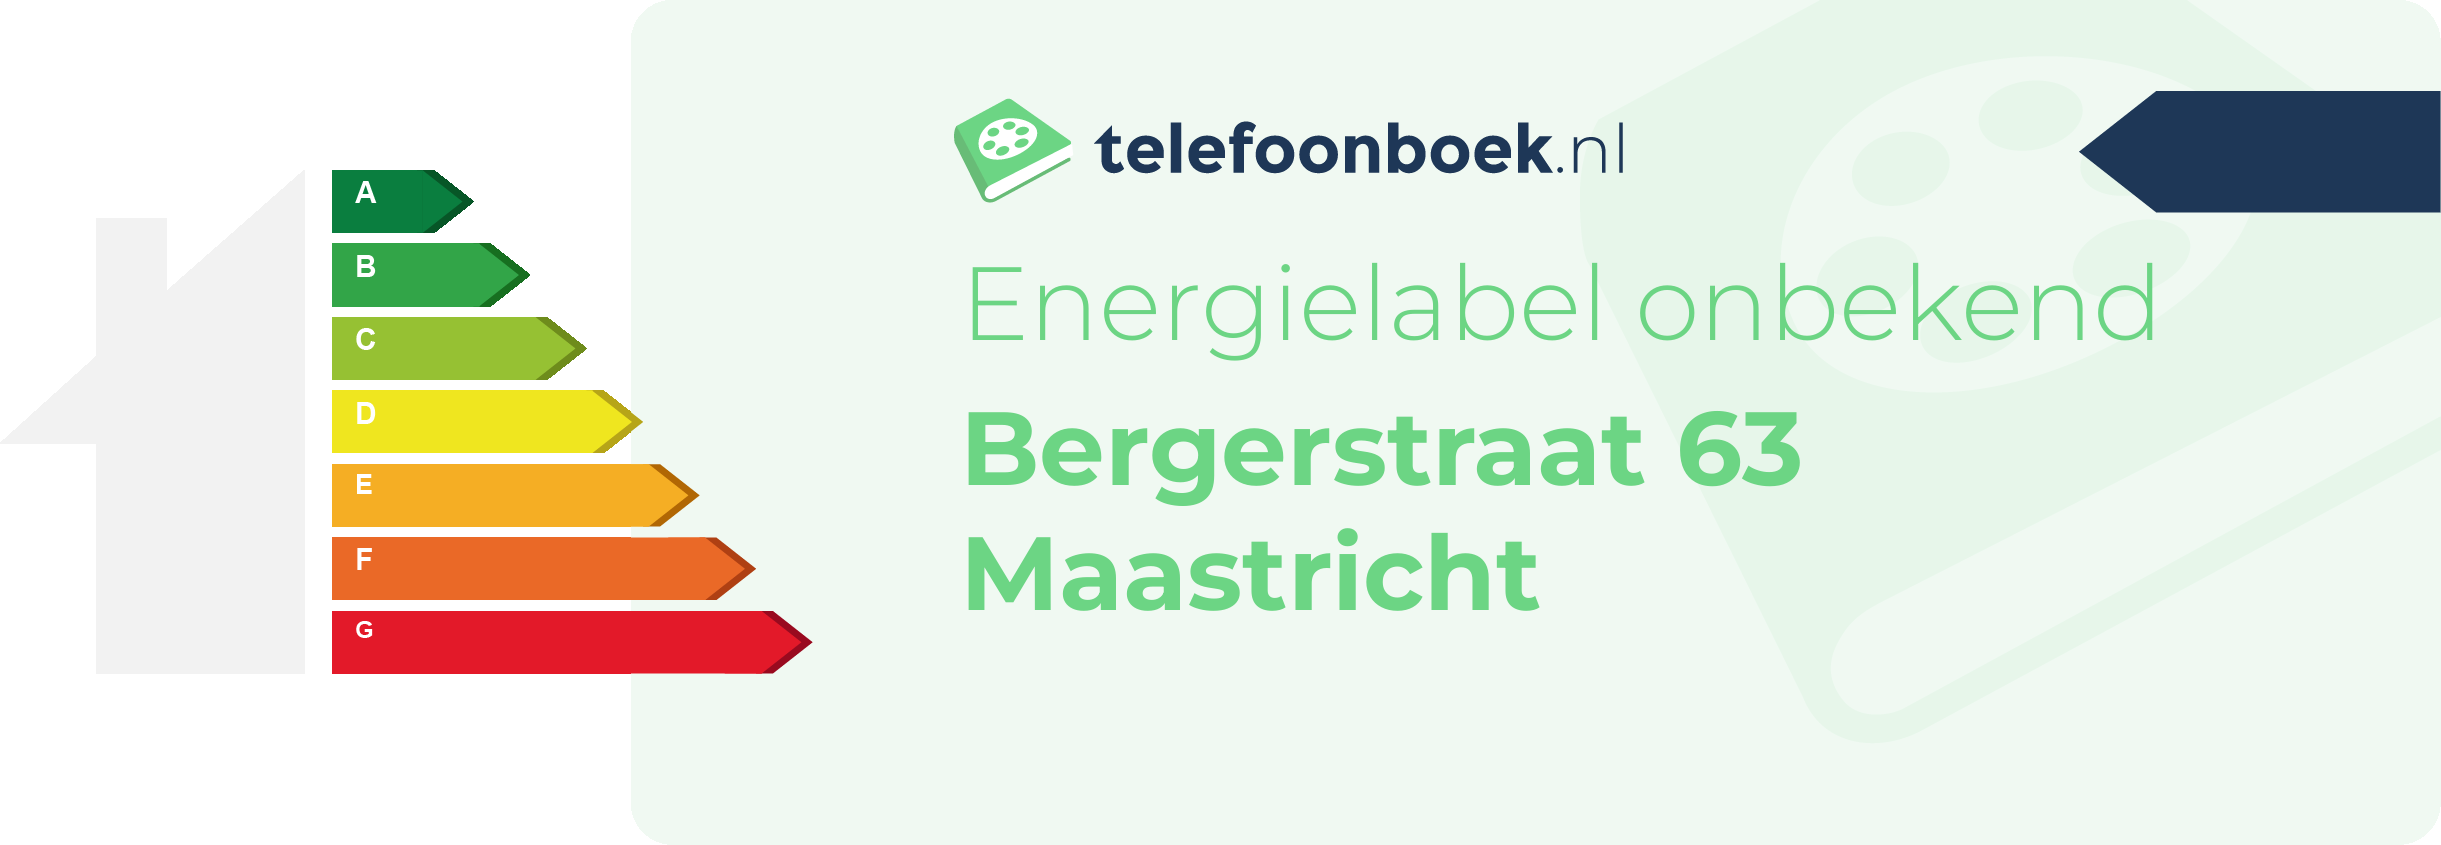 Energielabel Bergerstraat 63 Maastricht